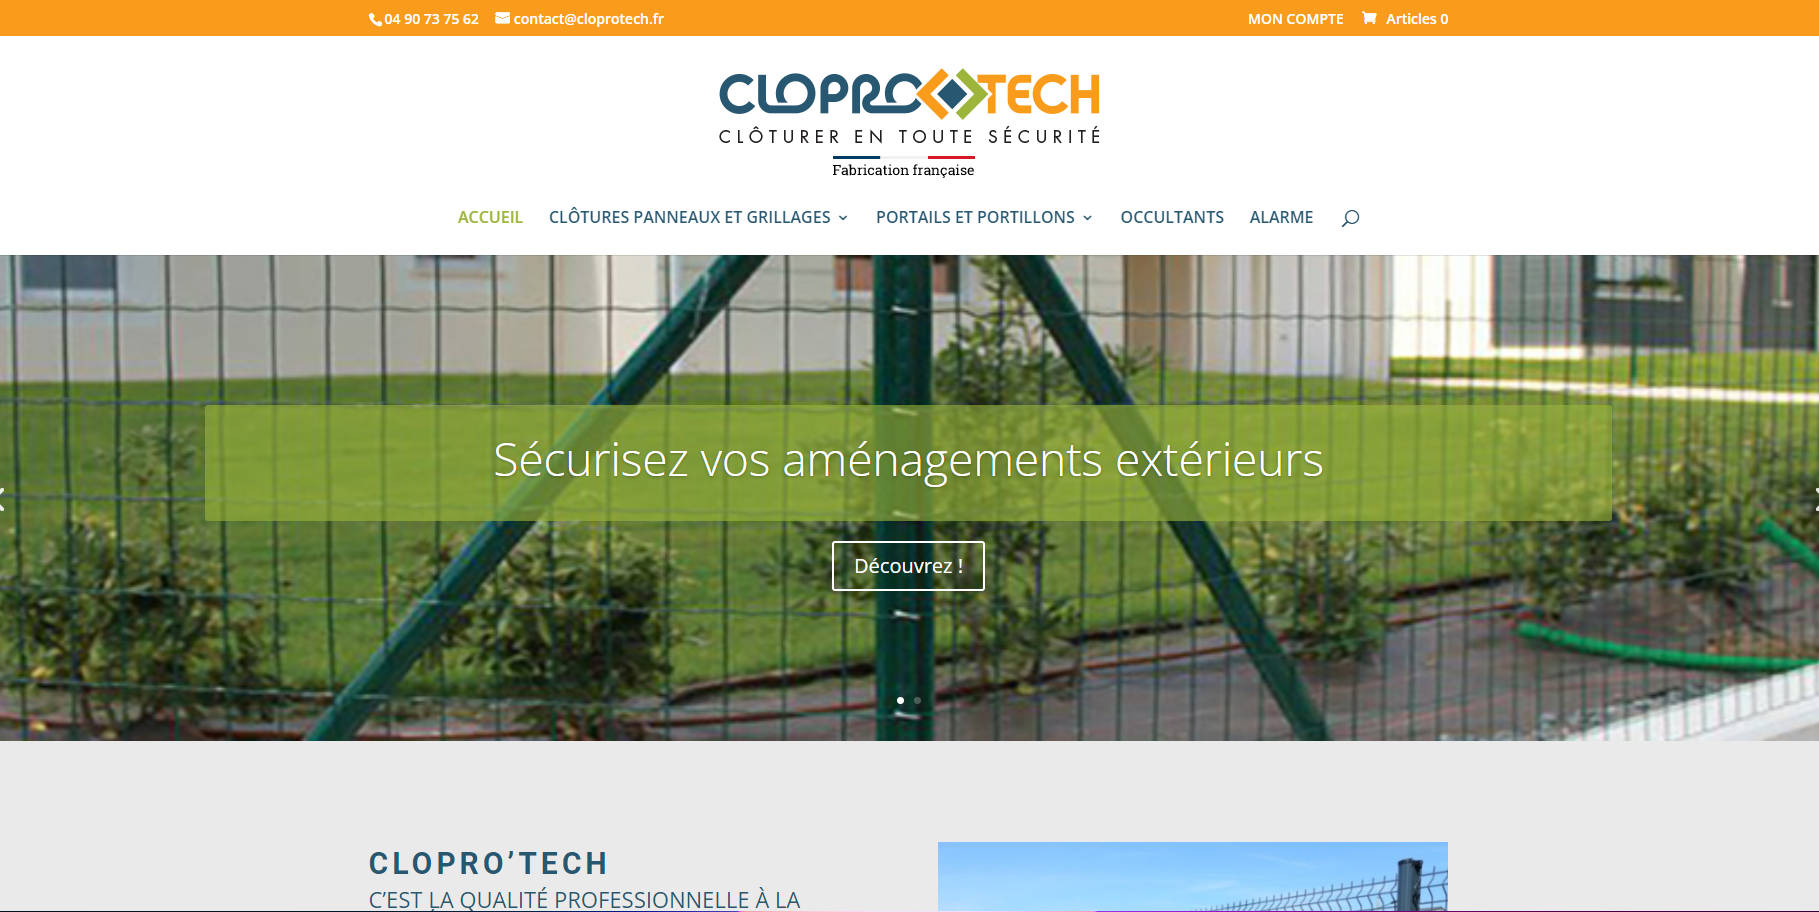 Le site Cloprotech